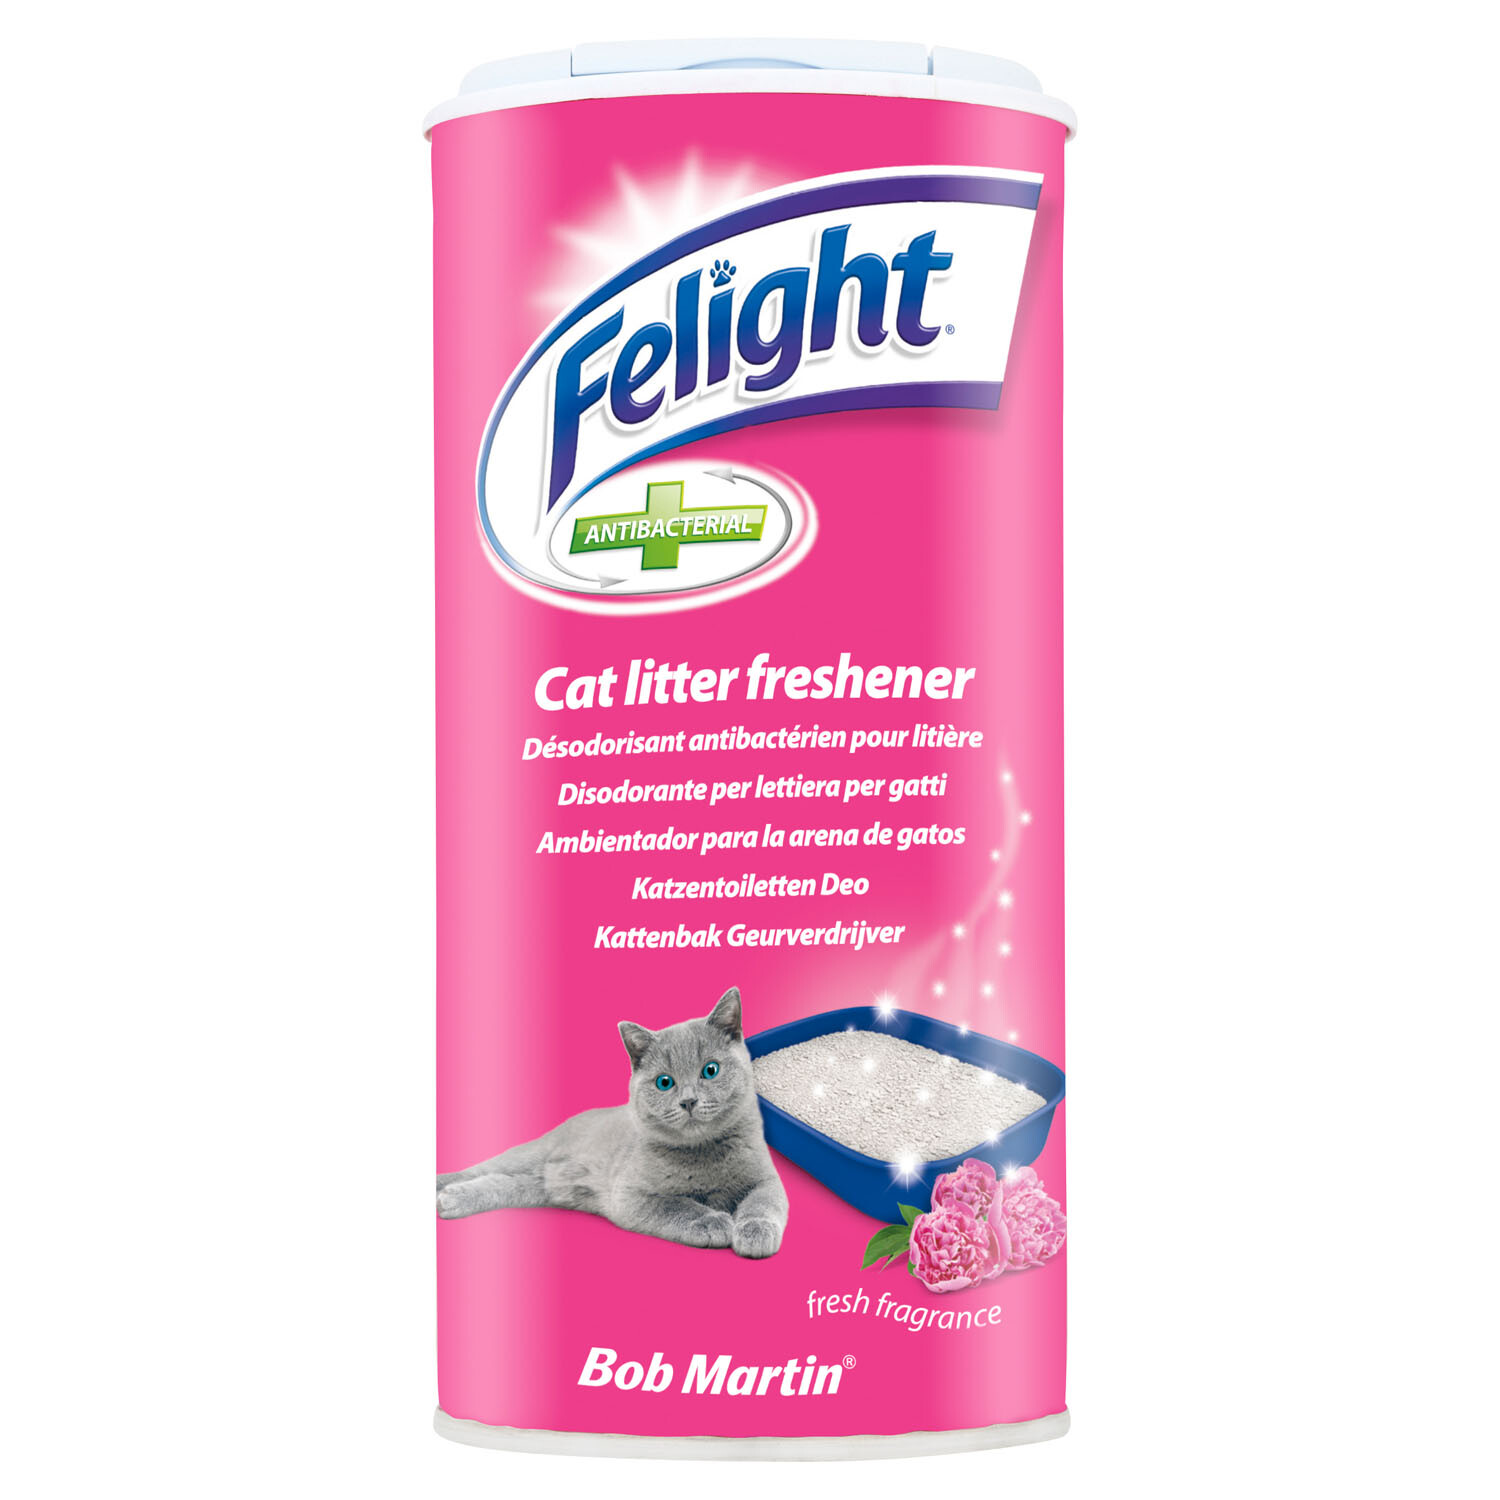 Felight Fresh Fragrance Antibacterial Cat Litter Freshener 300ml Image